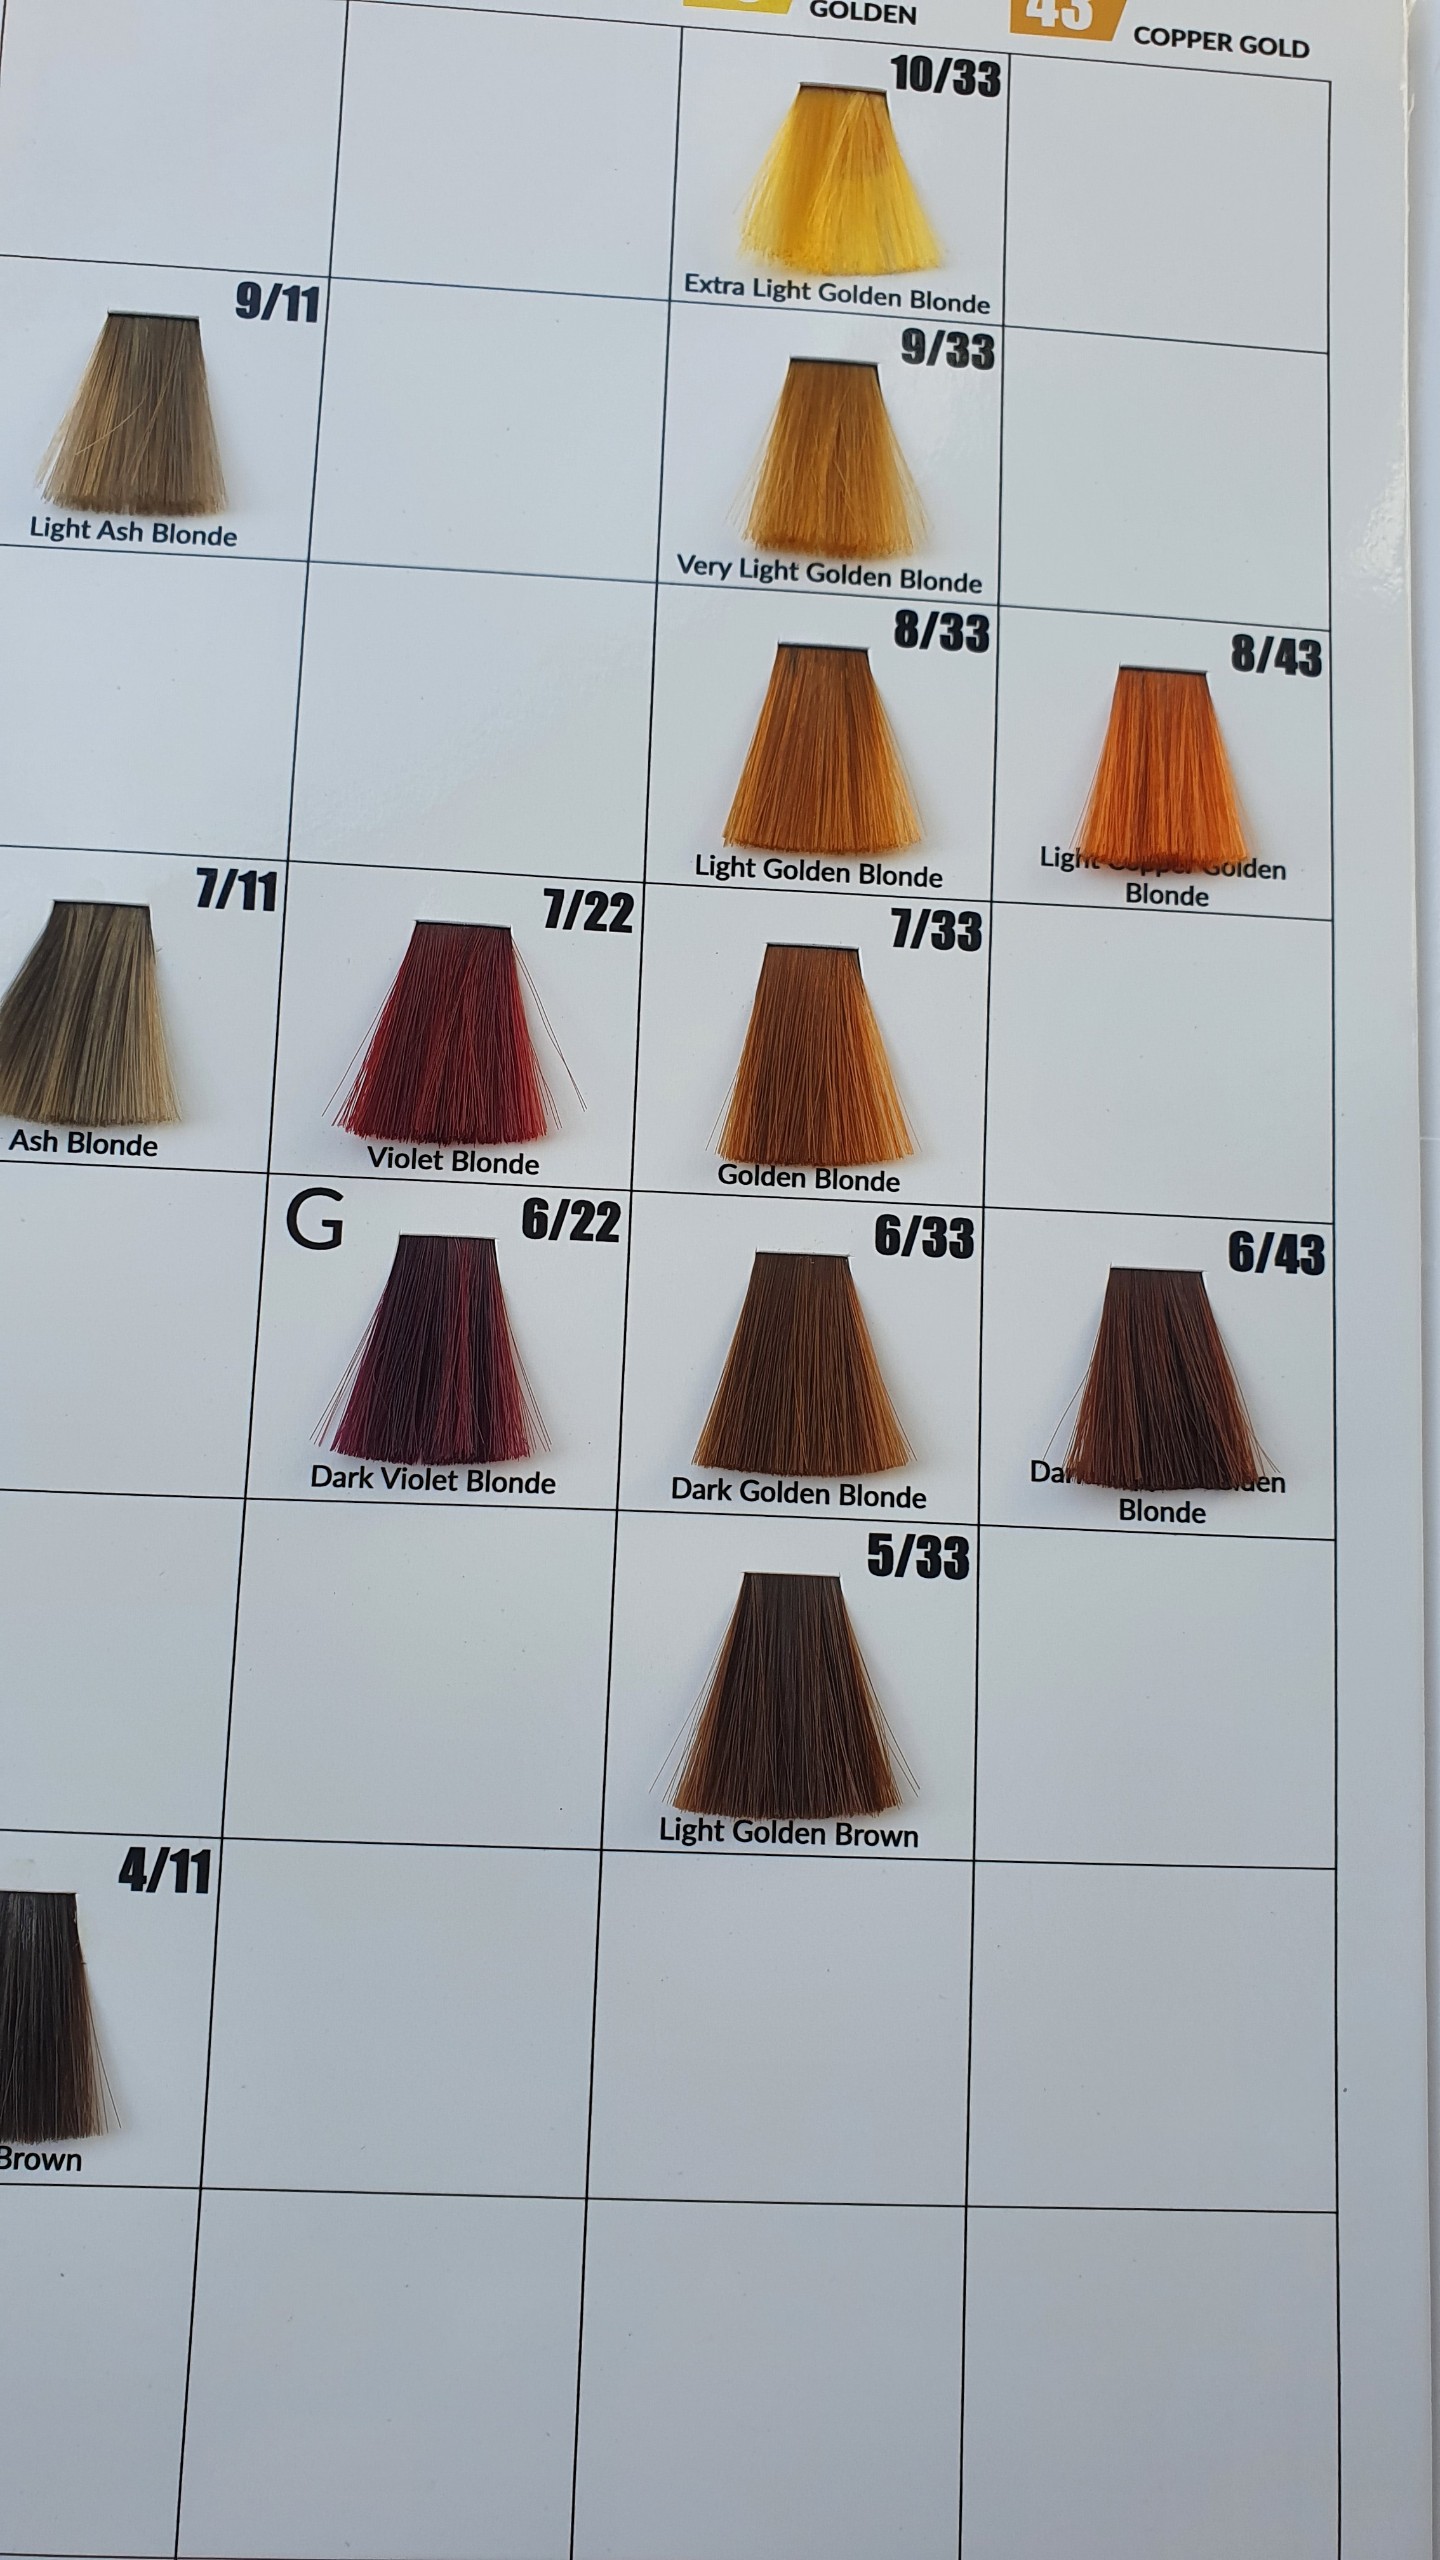 Kem nhuộm tóc kirin màu đỏ (7/66) với dưỡng chất collagen